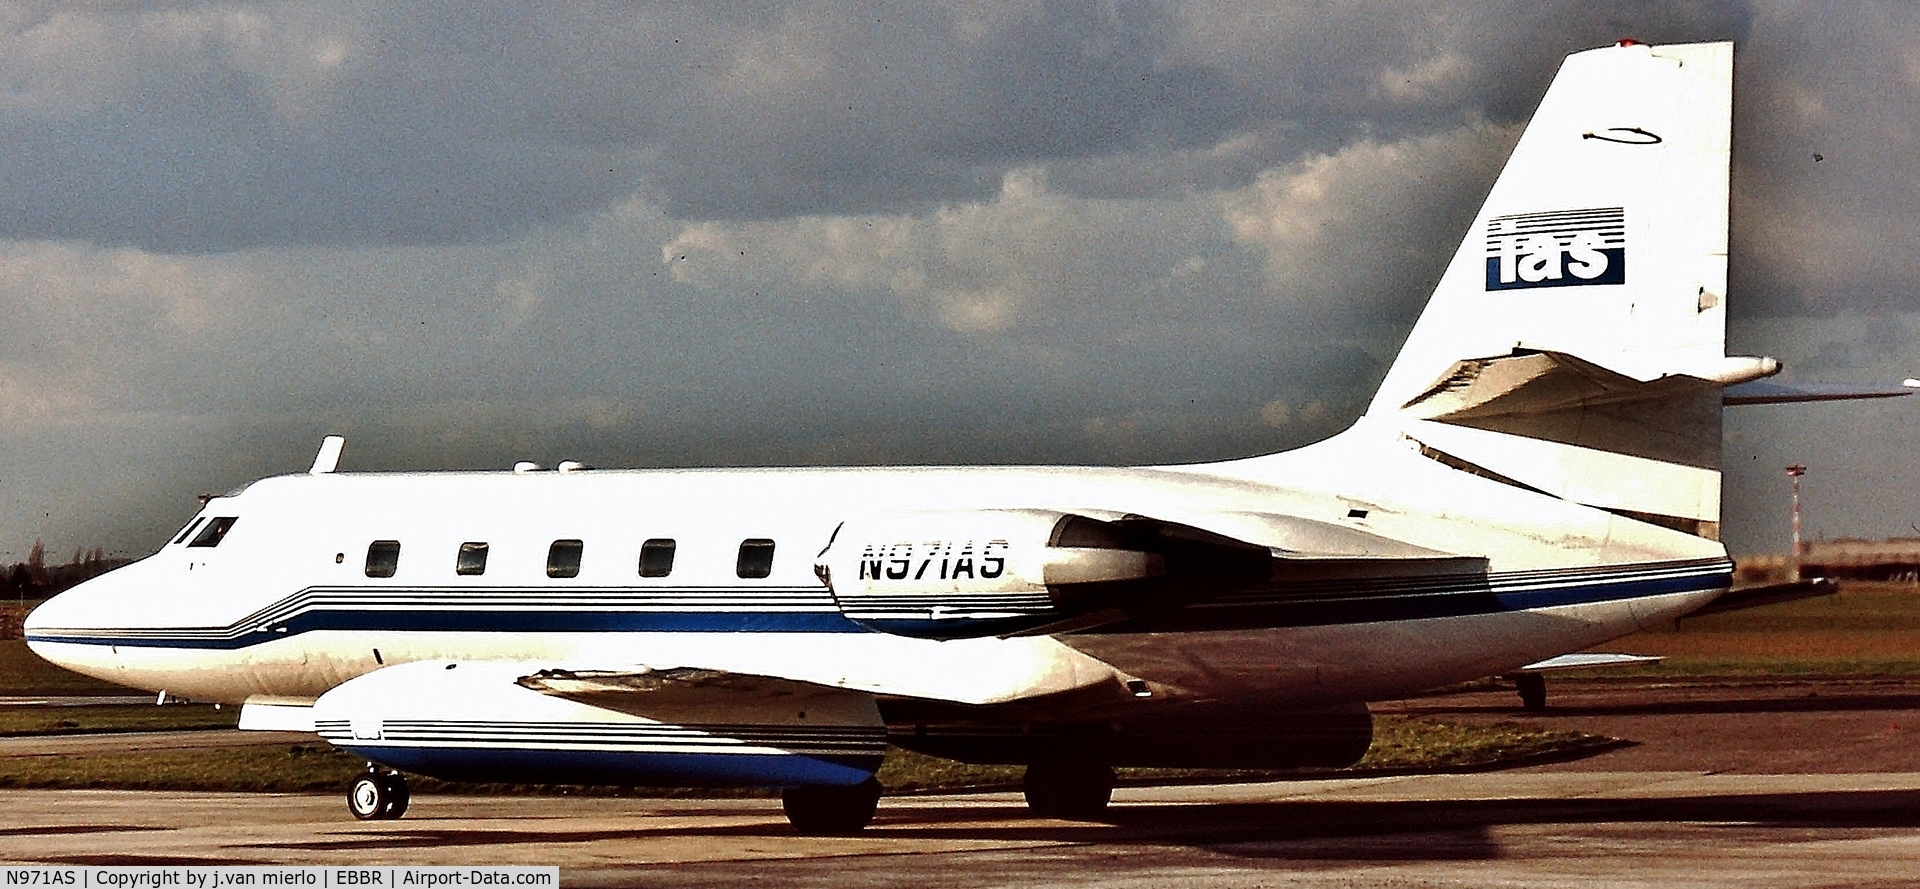 N971AS, 1961 Lockheed L-1329 Jetstar 731 C/N 5007, Brussels '90s